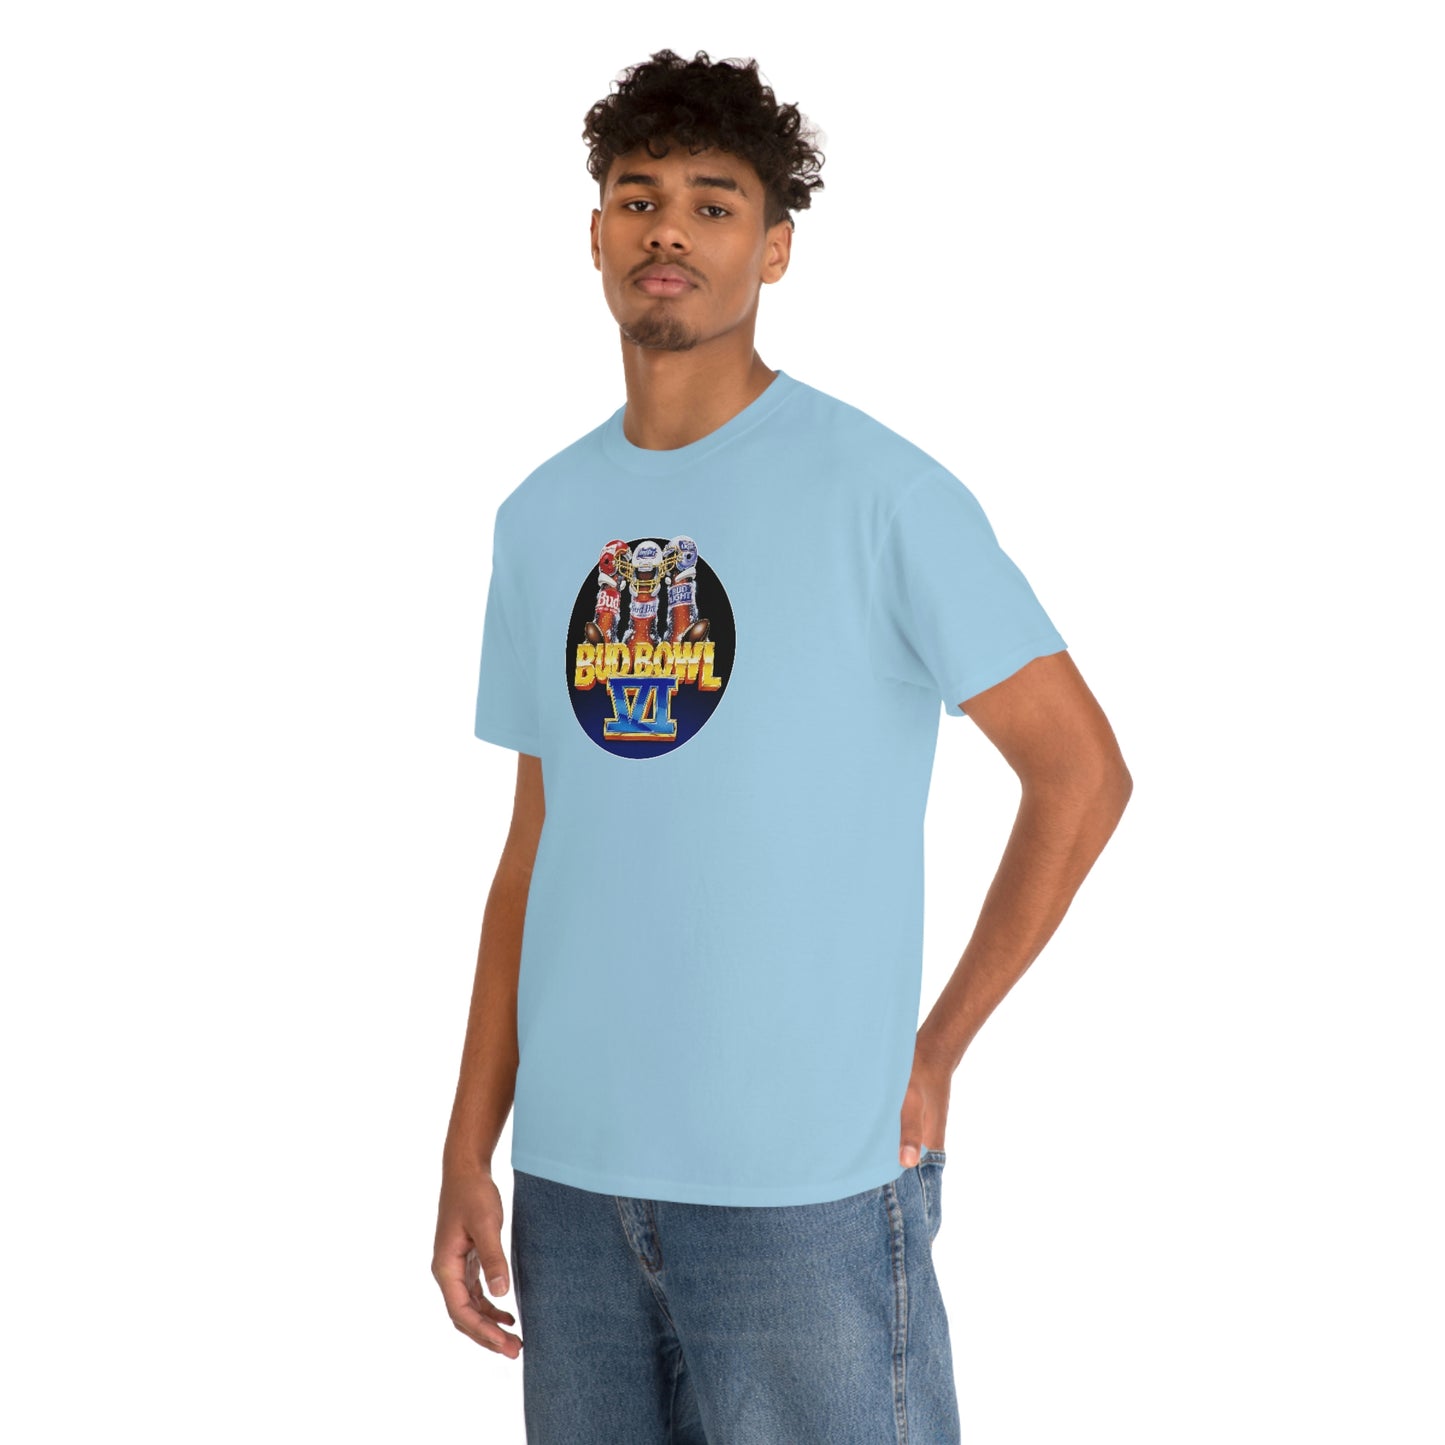 Bud Bowl VI T-Shirt